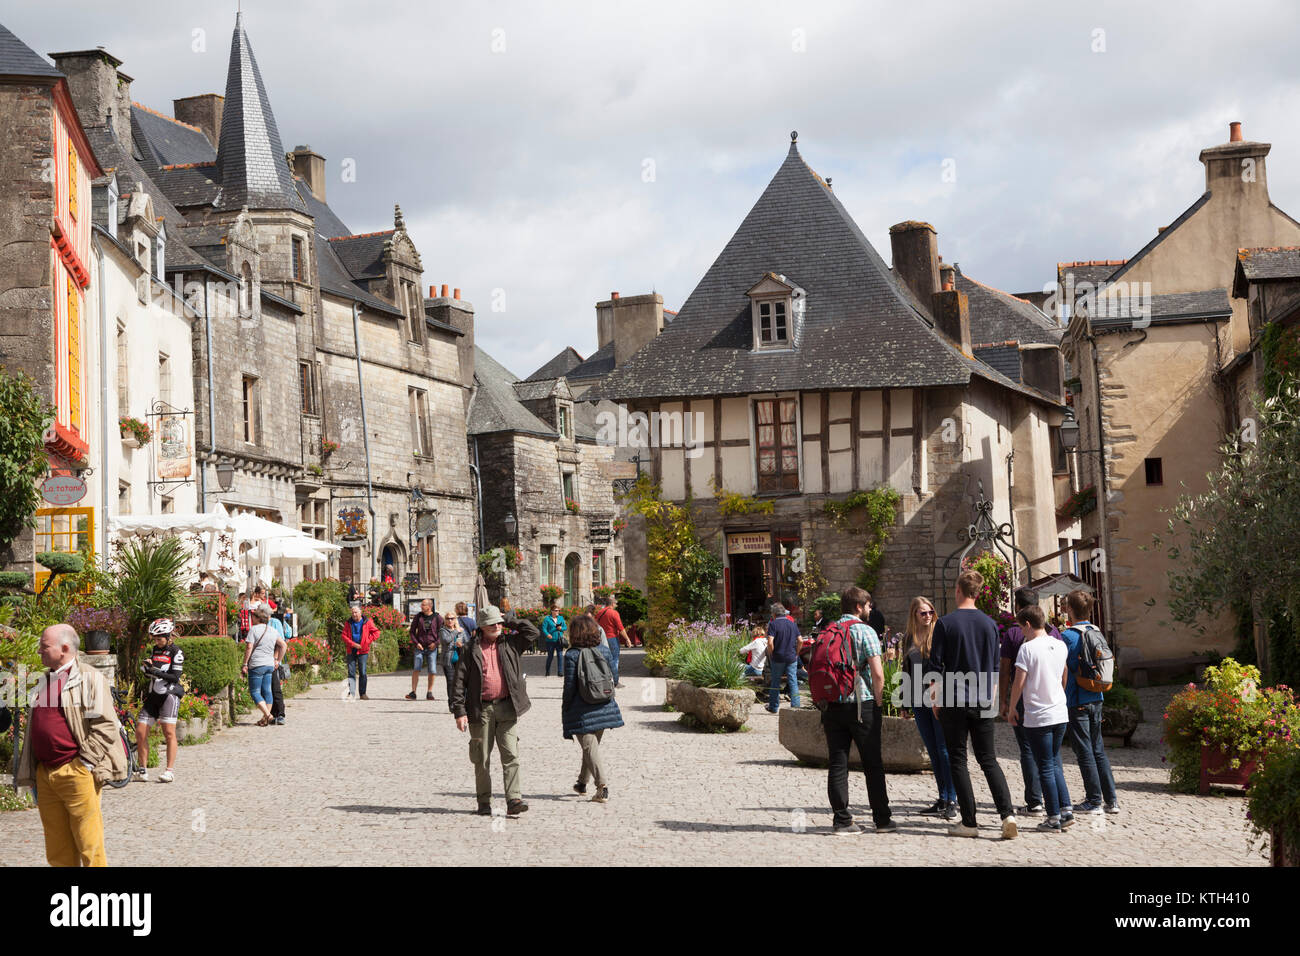 La place du puits, à Rochefort en Terre (Bretagne - France). Classé comme le 2016 du plus beau village de France. Banque D'Images